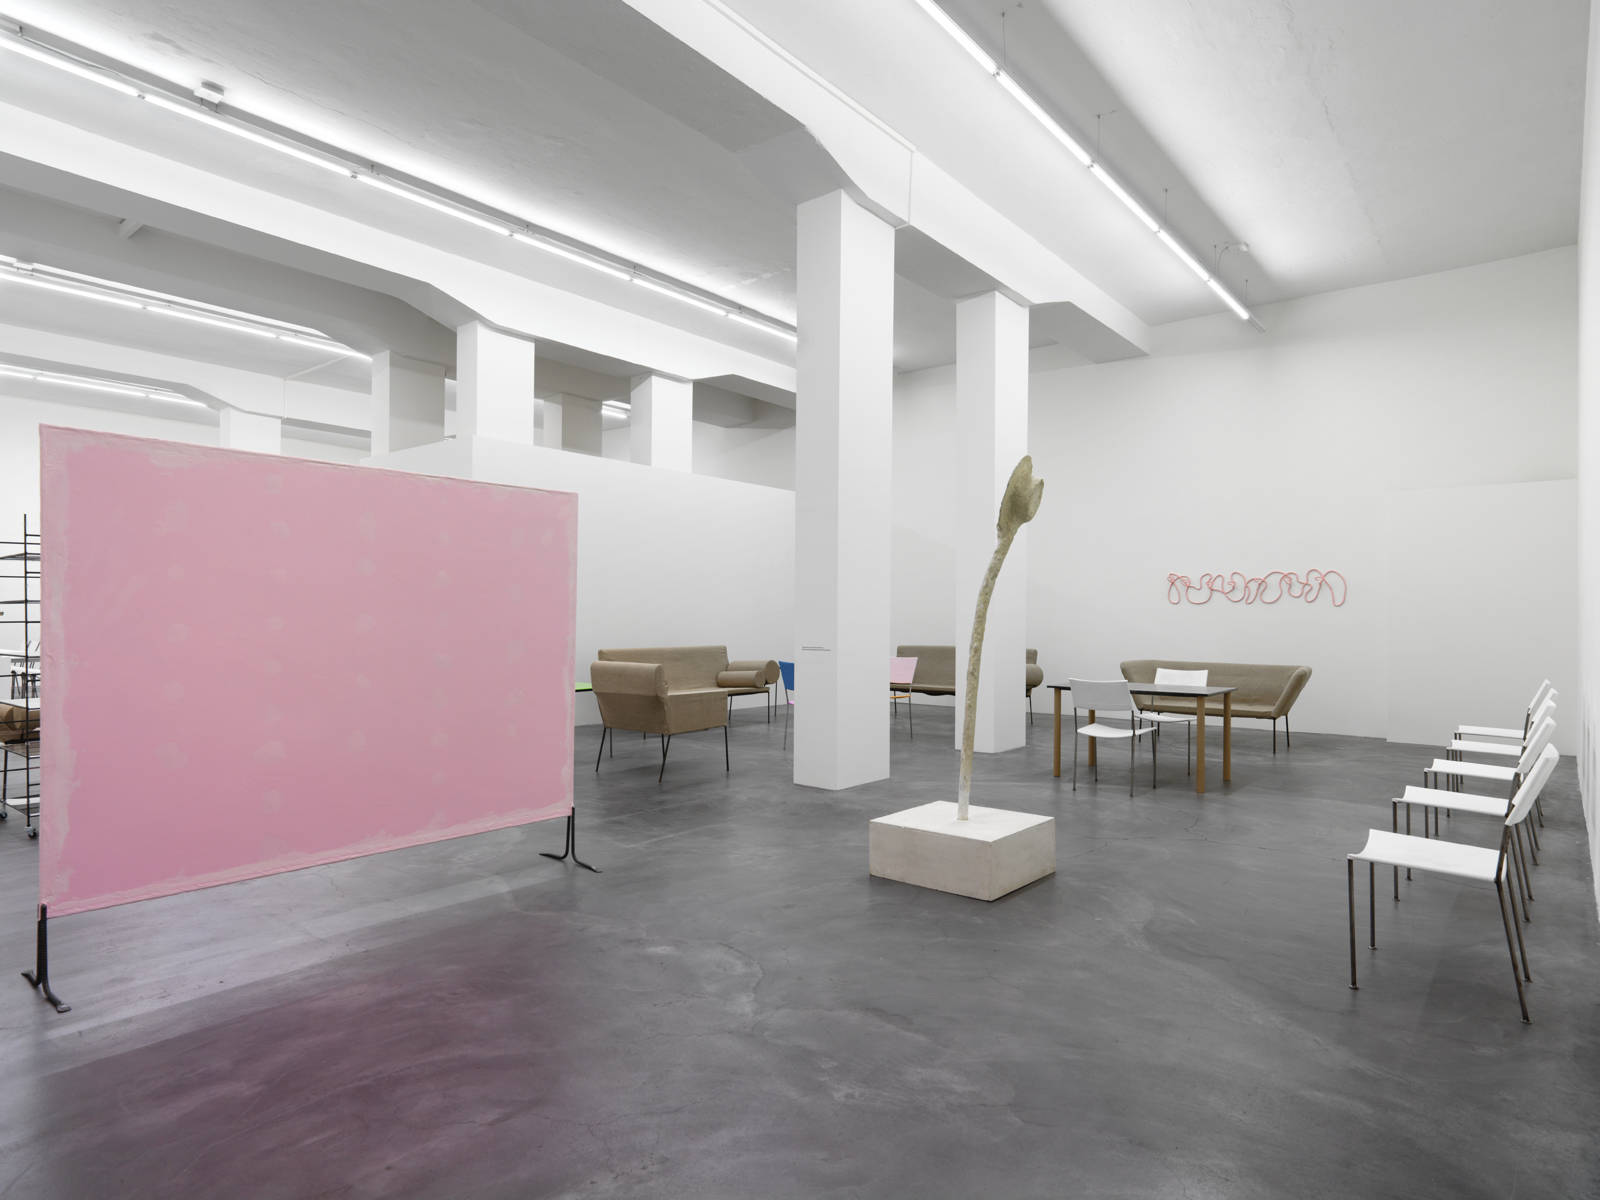 Franz West / "Möbelskulpturen", exhibition view, Galerie Eva Presenhuber, Zürich / 2015